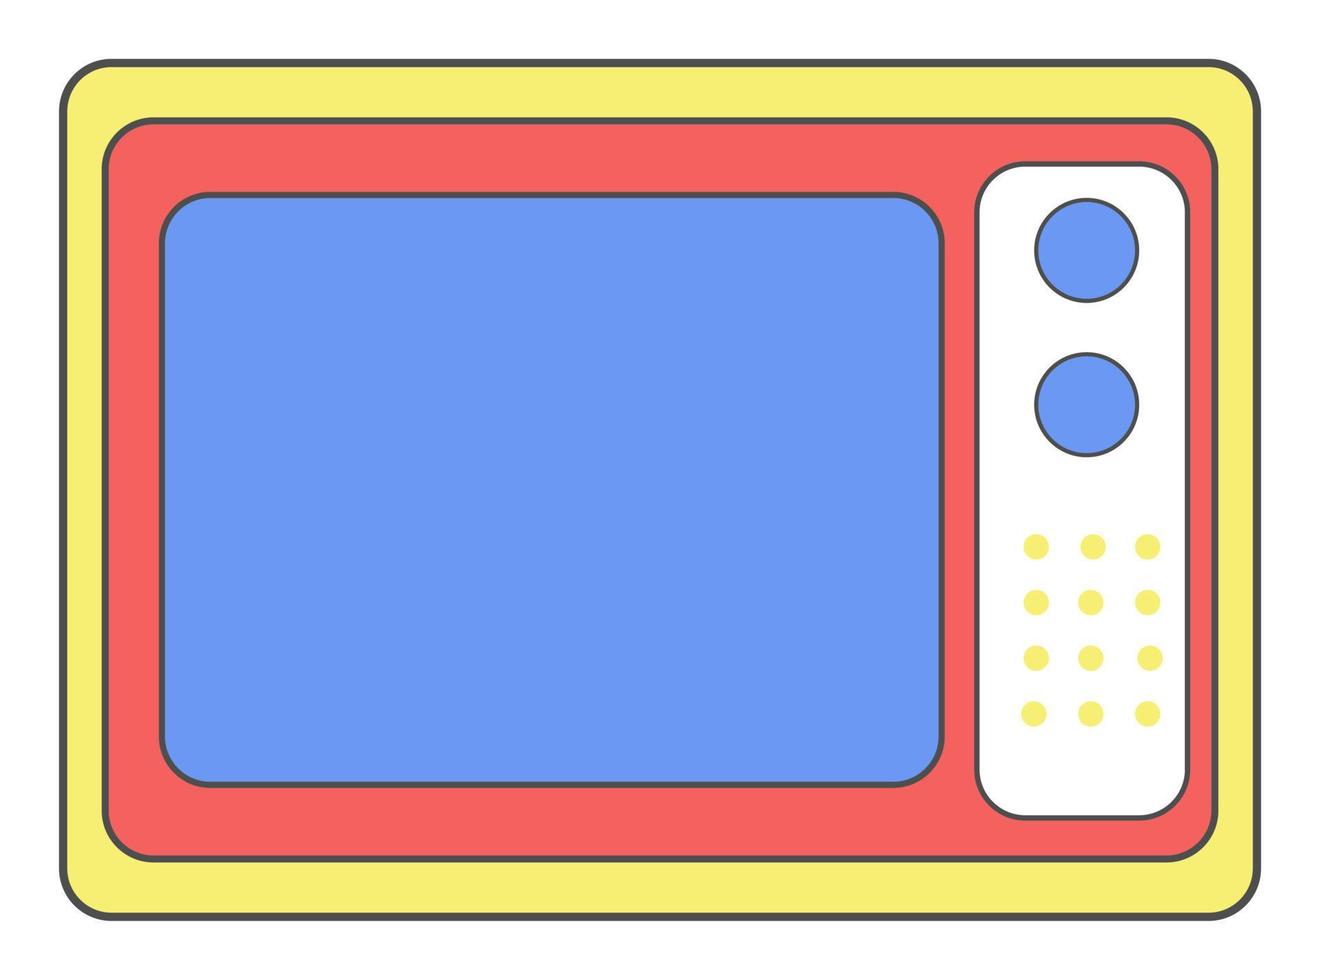 Retro TV Sticker Vector Illustration